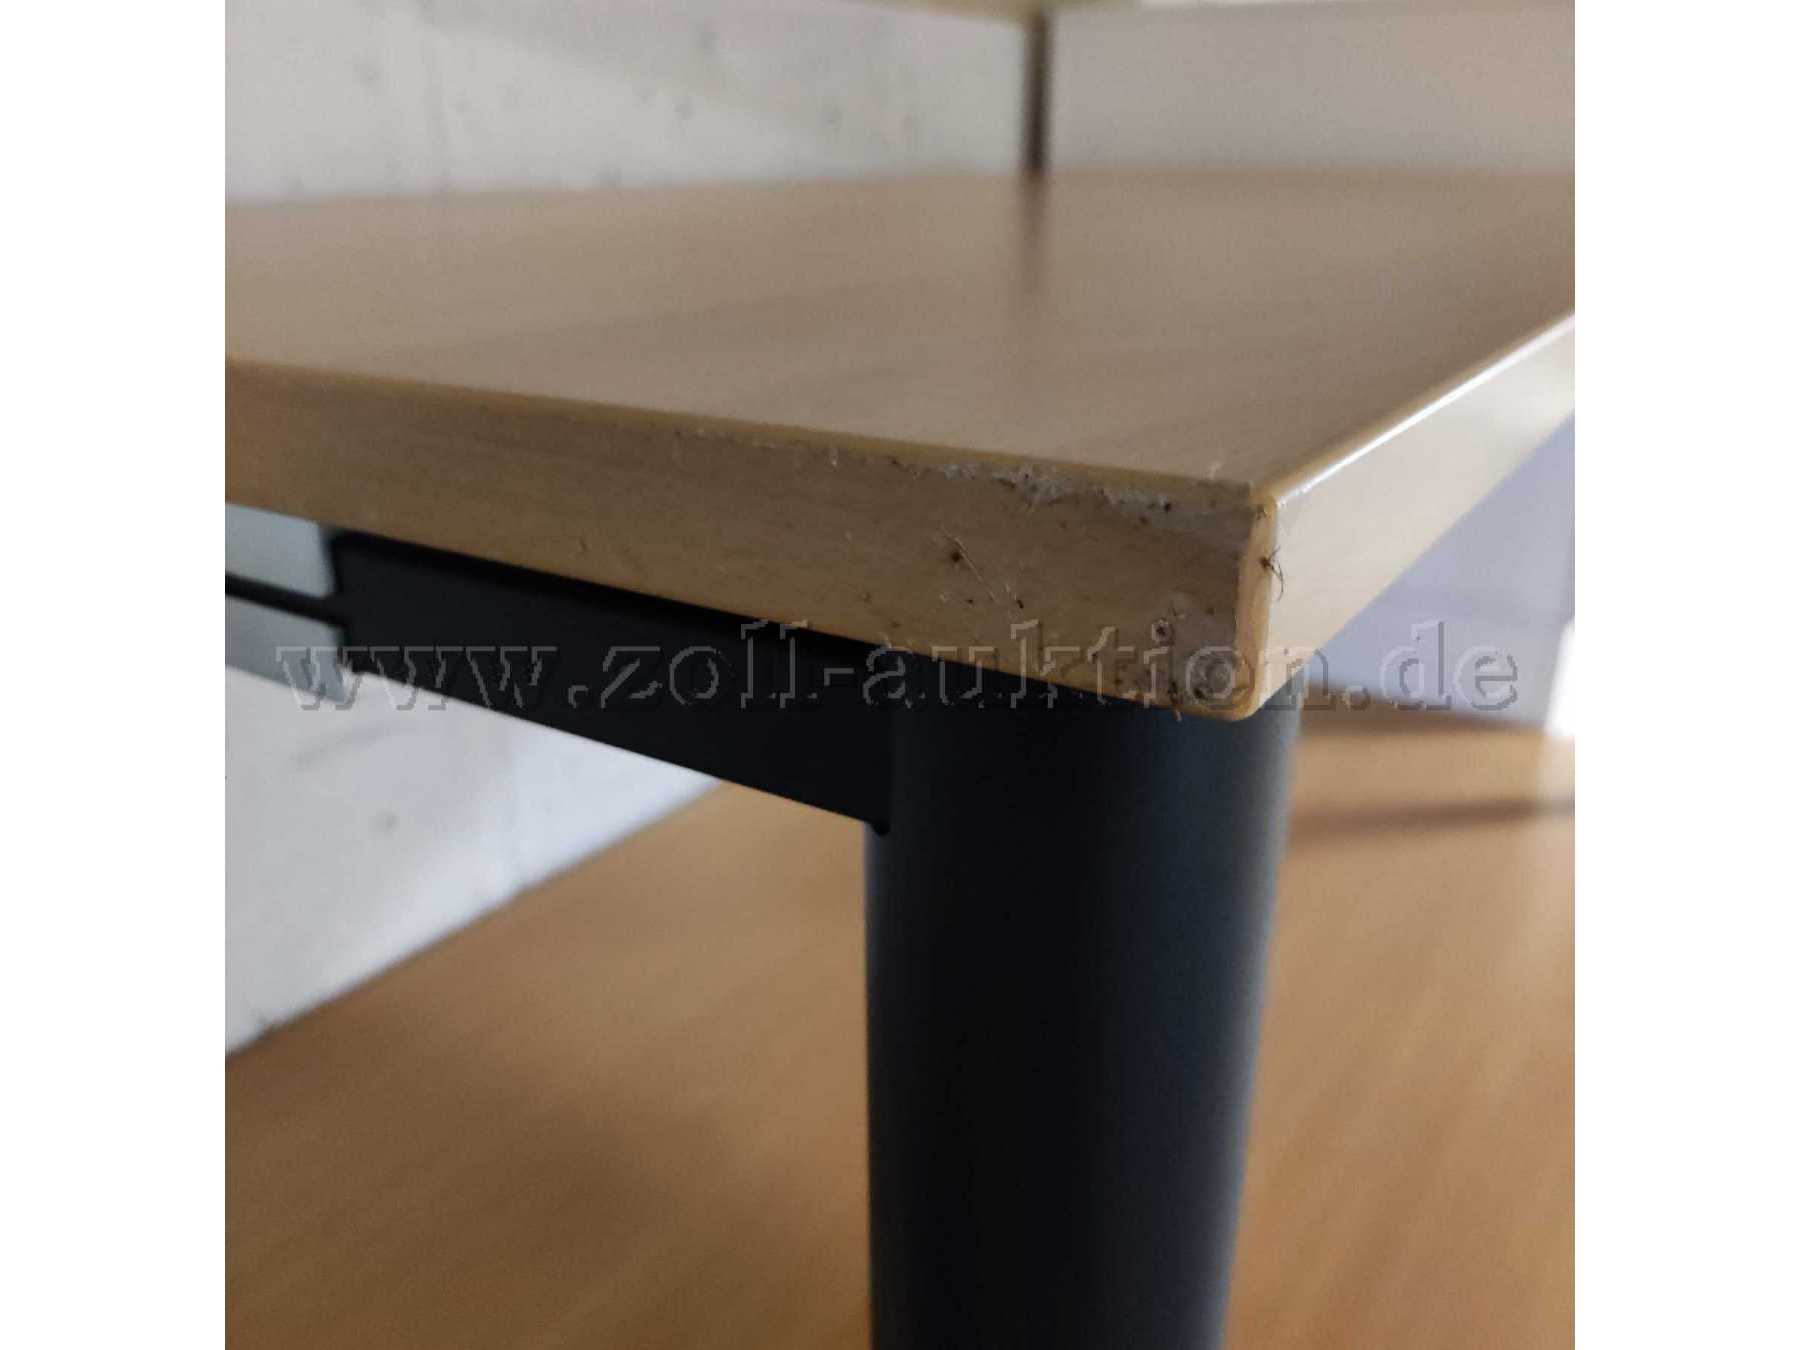 Schreibtisch mit tiefergehenden Kratzern / Abschürfungen